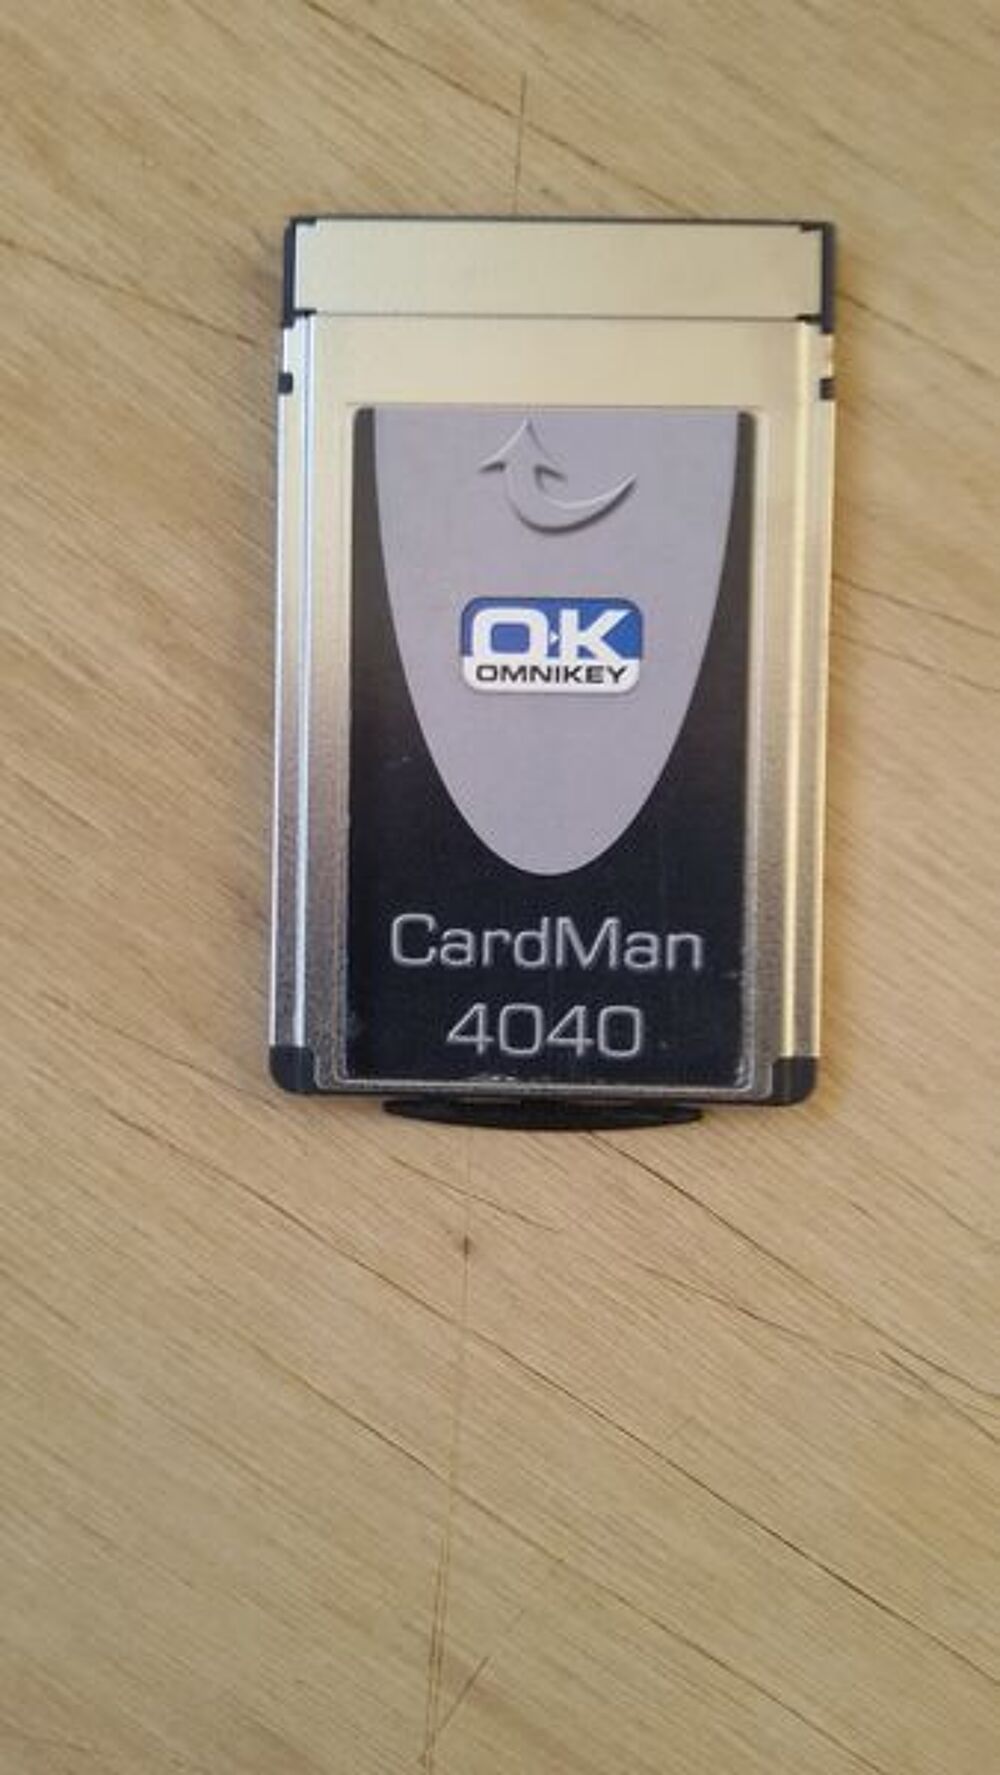 Cardman 4040 Lecteur format PCMCIA Matriel informatique